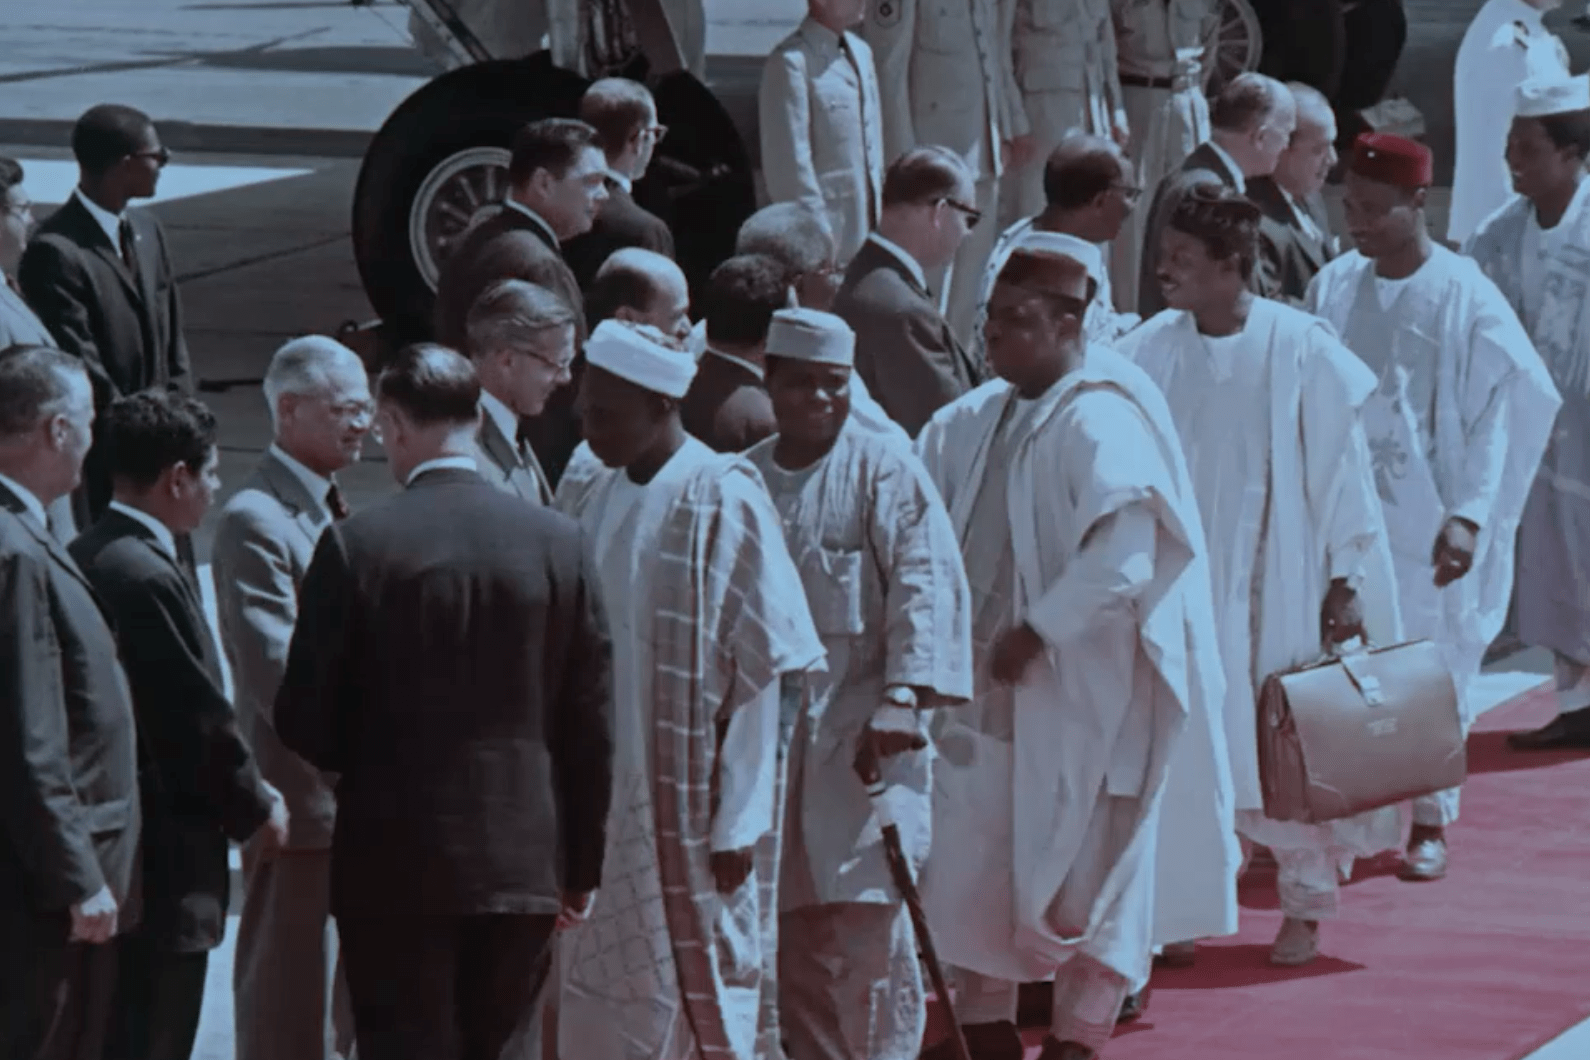 America Welcomes Prime Minister Abubakar Balewa of Nigeria, July 25th, 1961